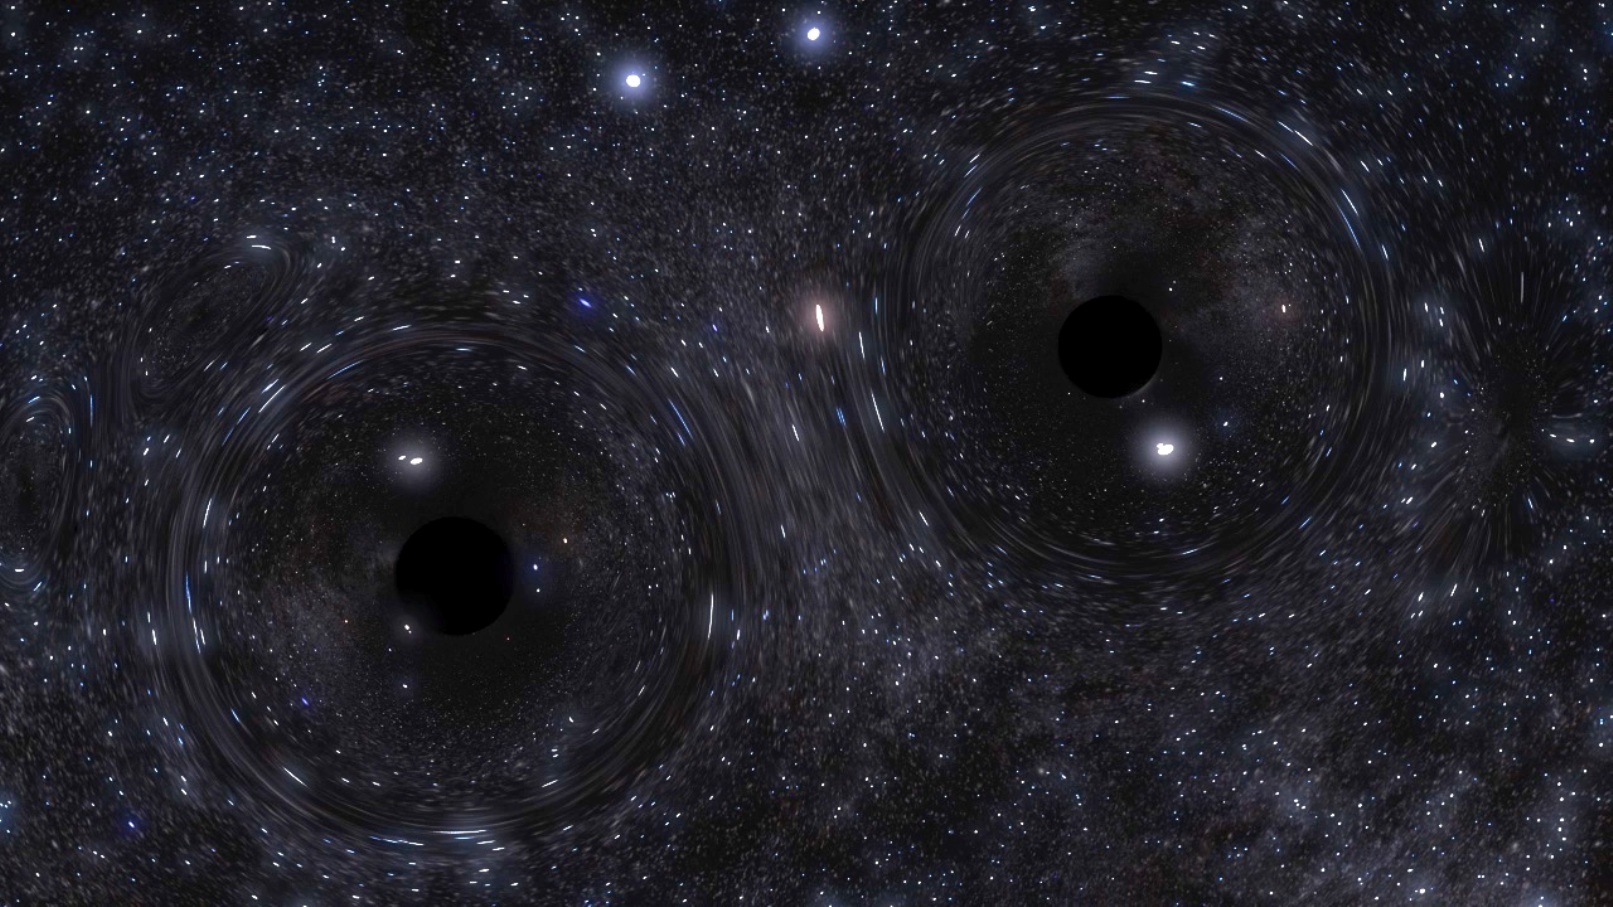 Une vue d'artiste d'un trou noir binaire et de ses effets de lentille gravitationnelle. © Northwestern Visualization/Carl Rodriguez